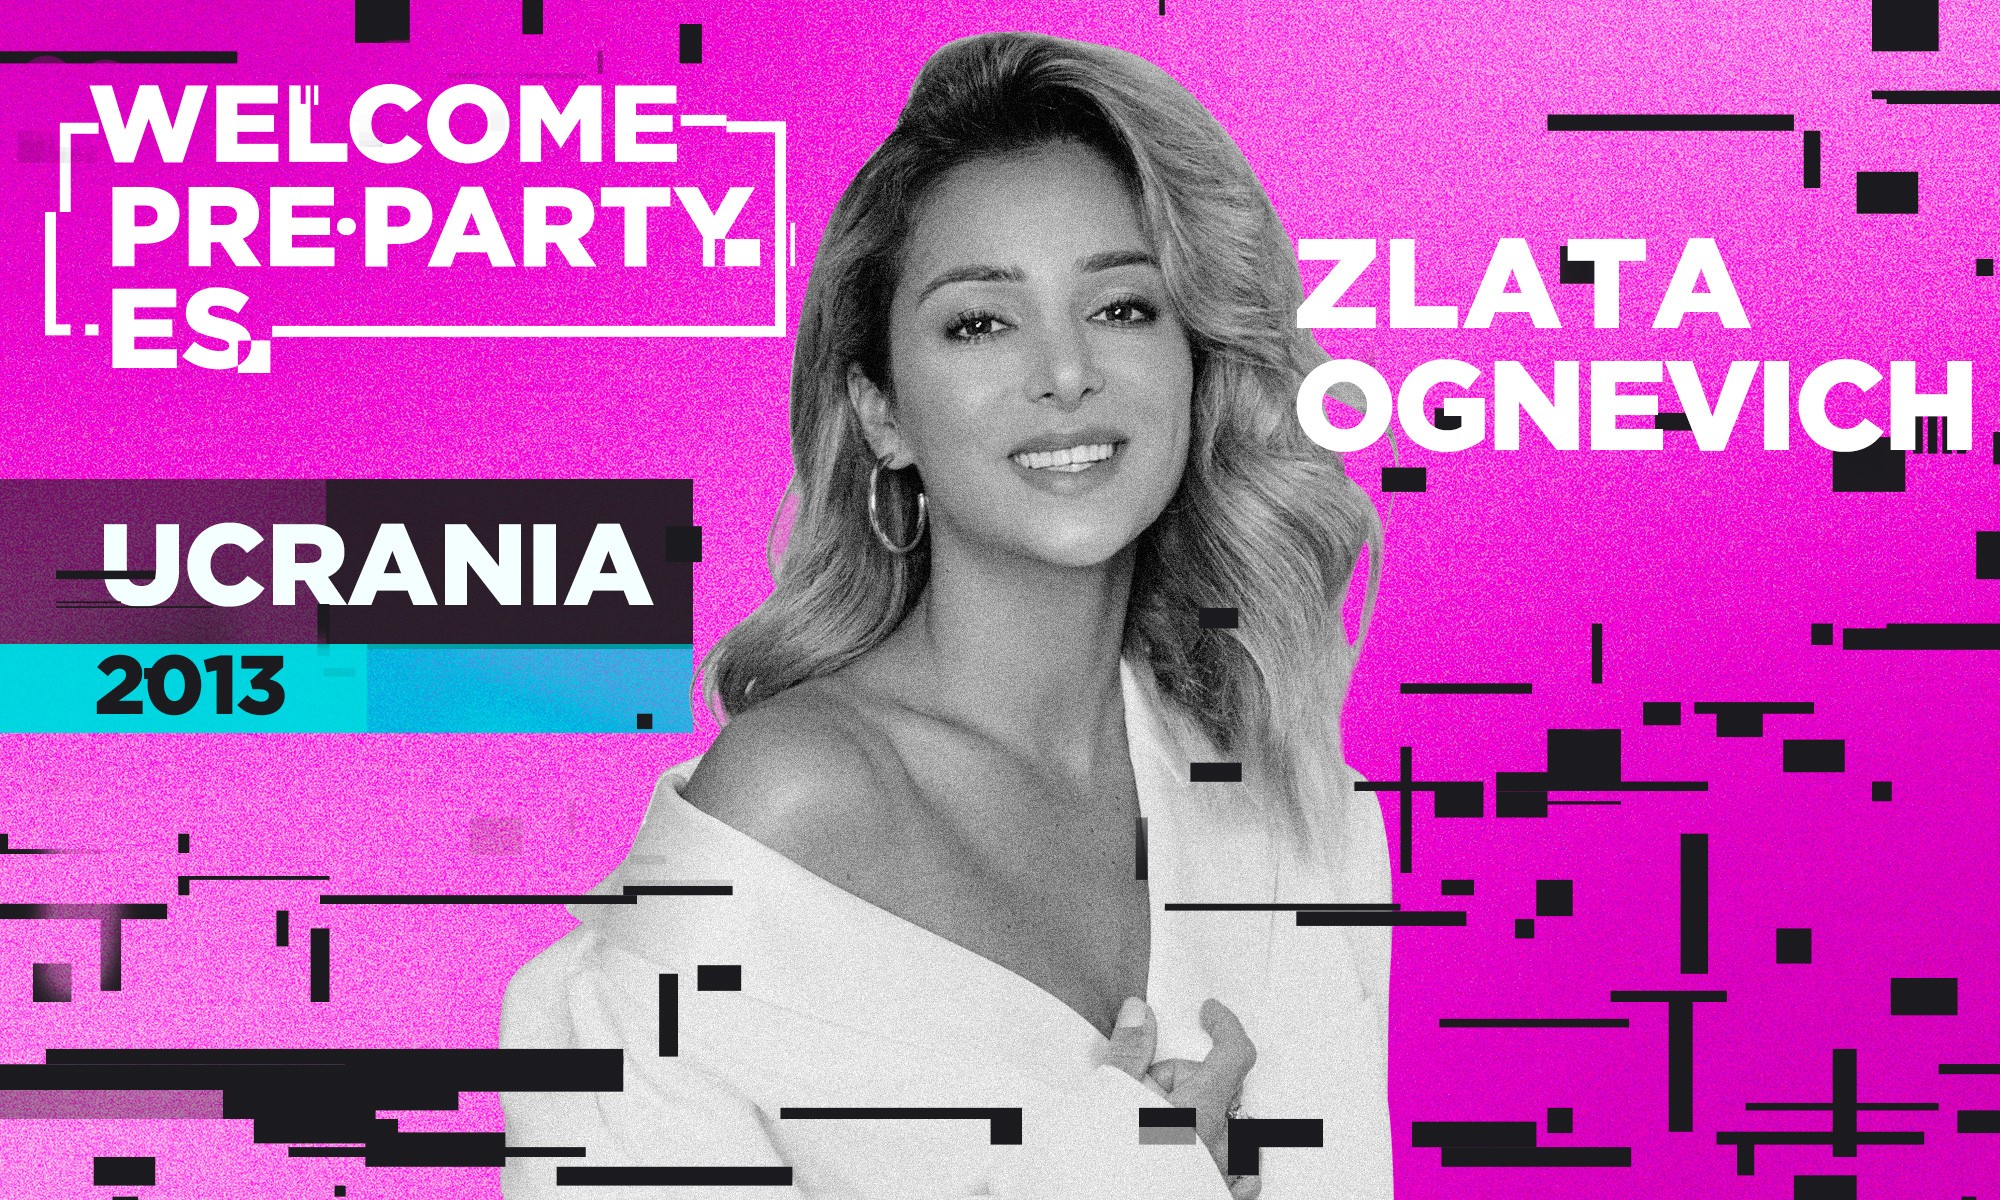 La ucraniana Zlata Ognevich realizará un mini-concierto en la Welcome PrePartyES 2020